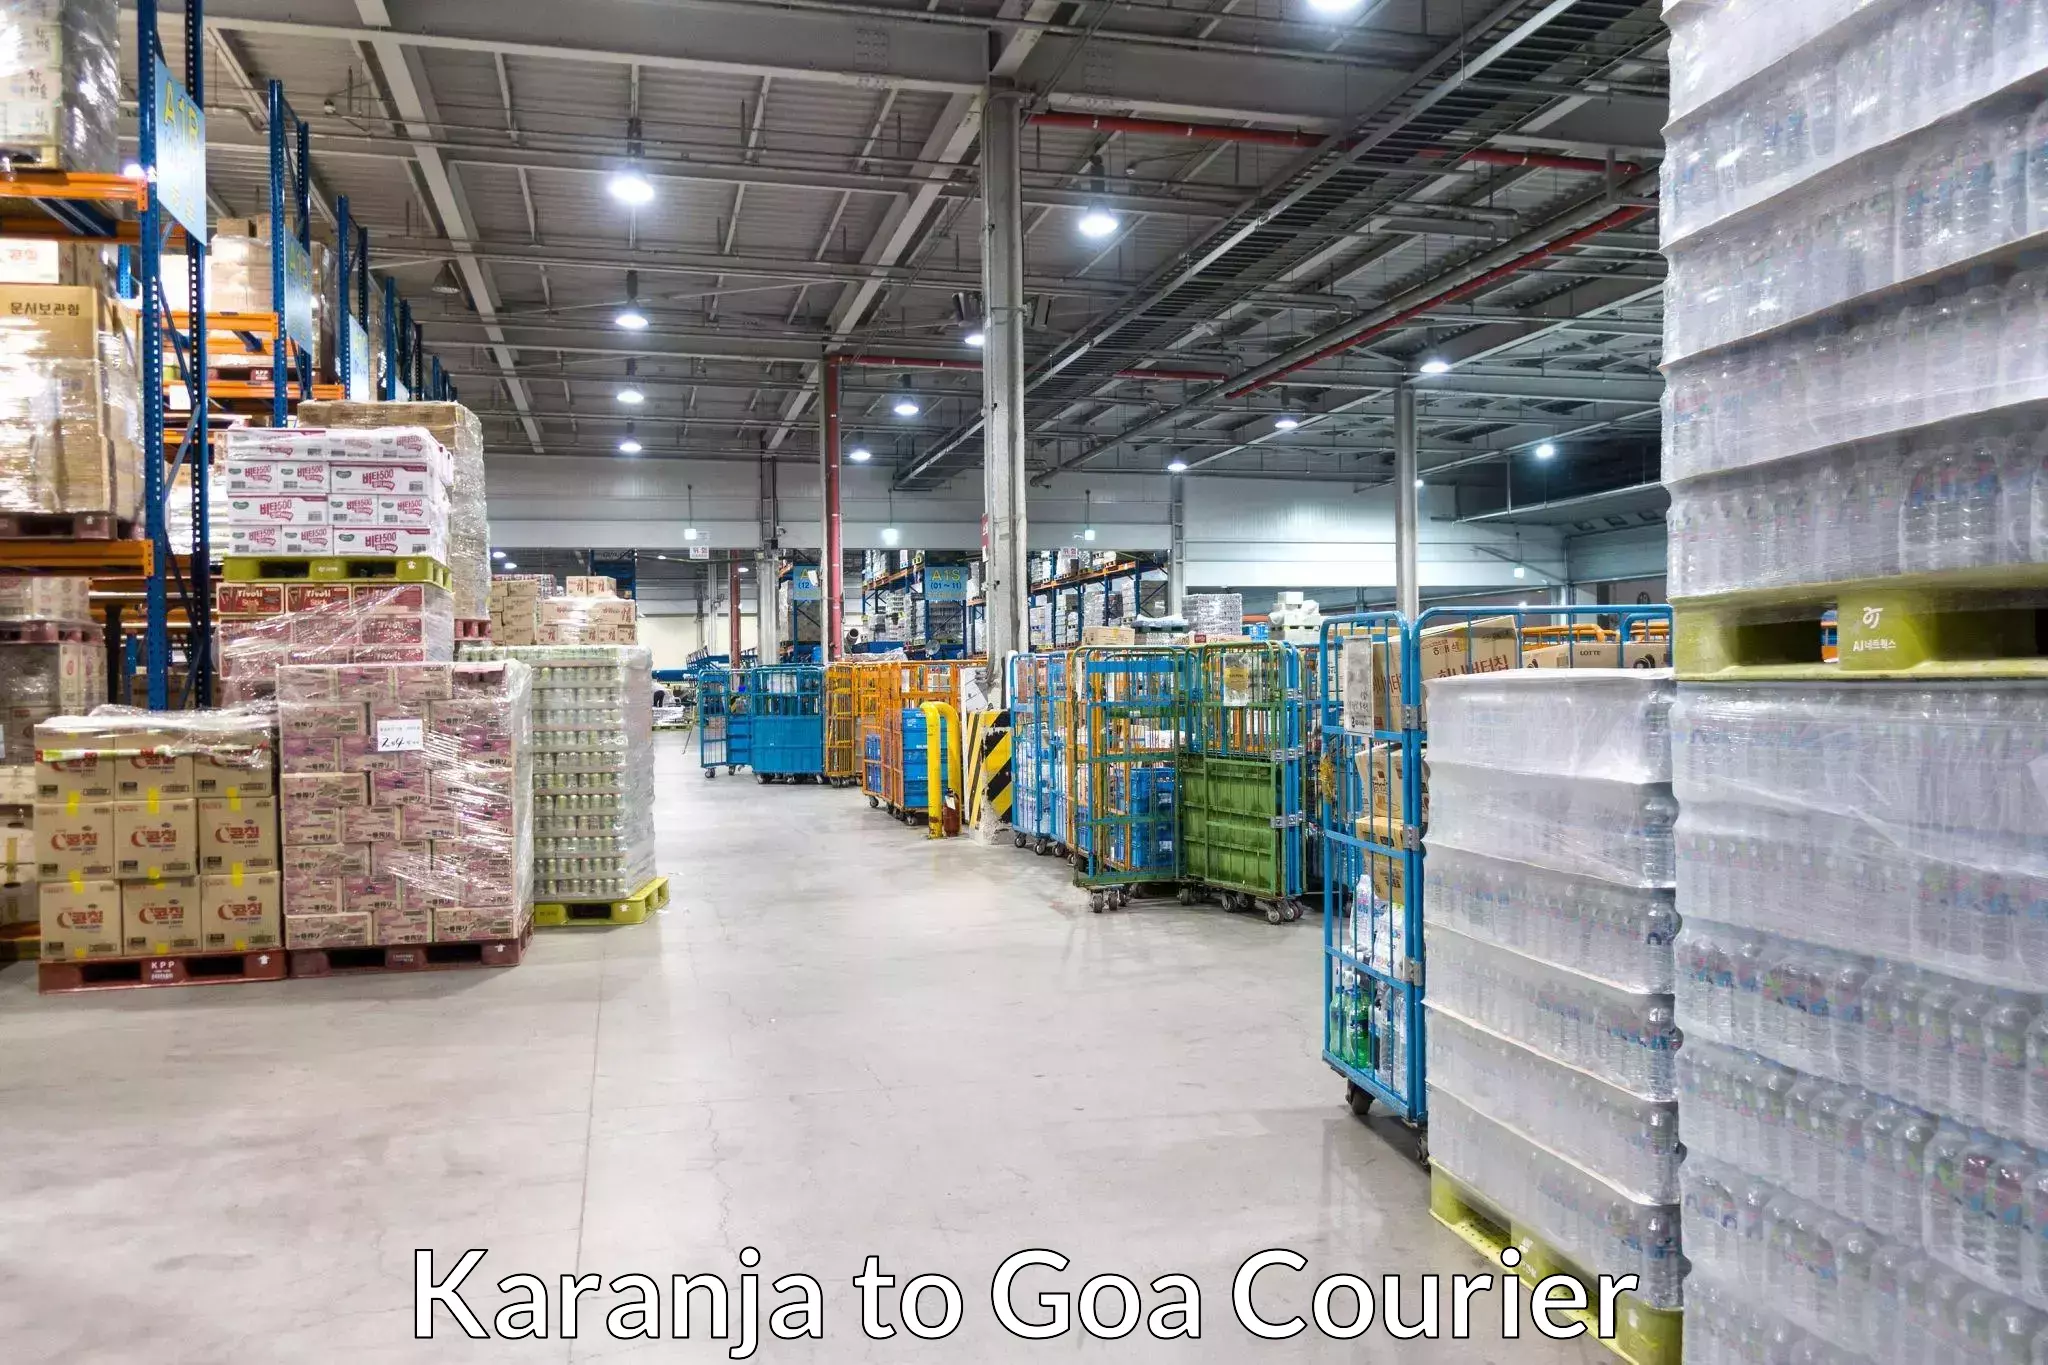 High value parcel delivery in Karanja to Sanvordem